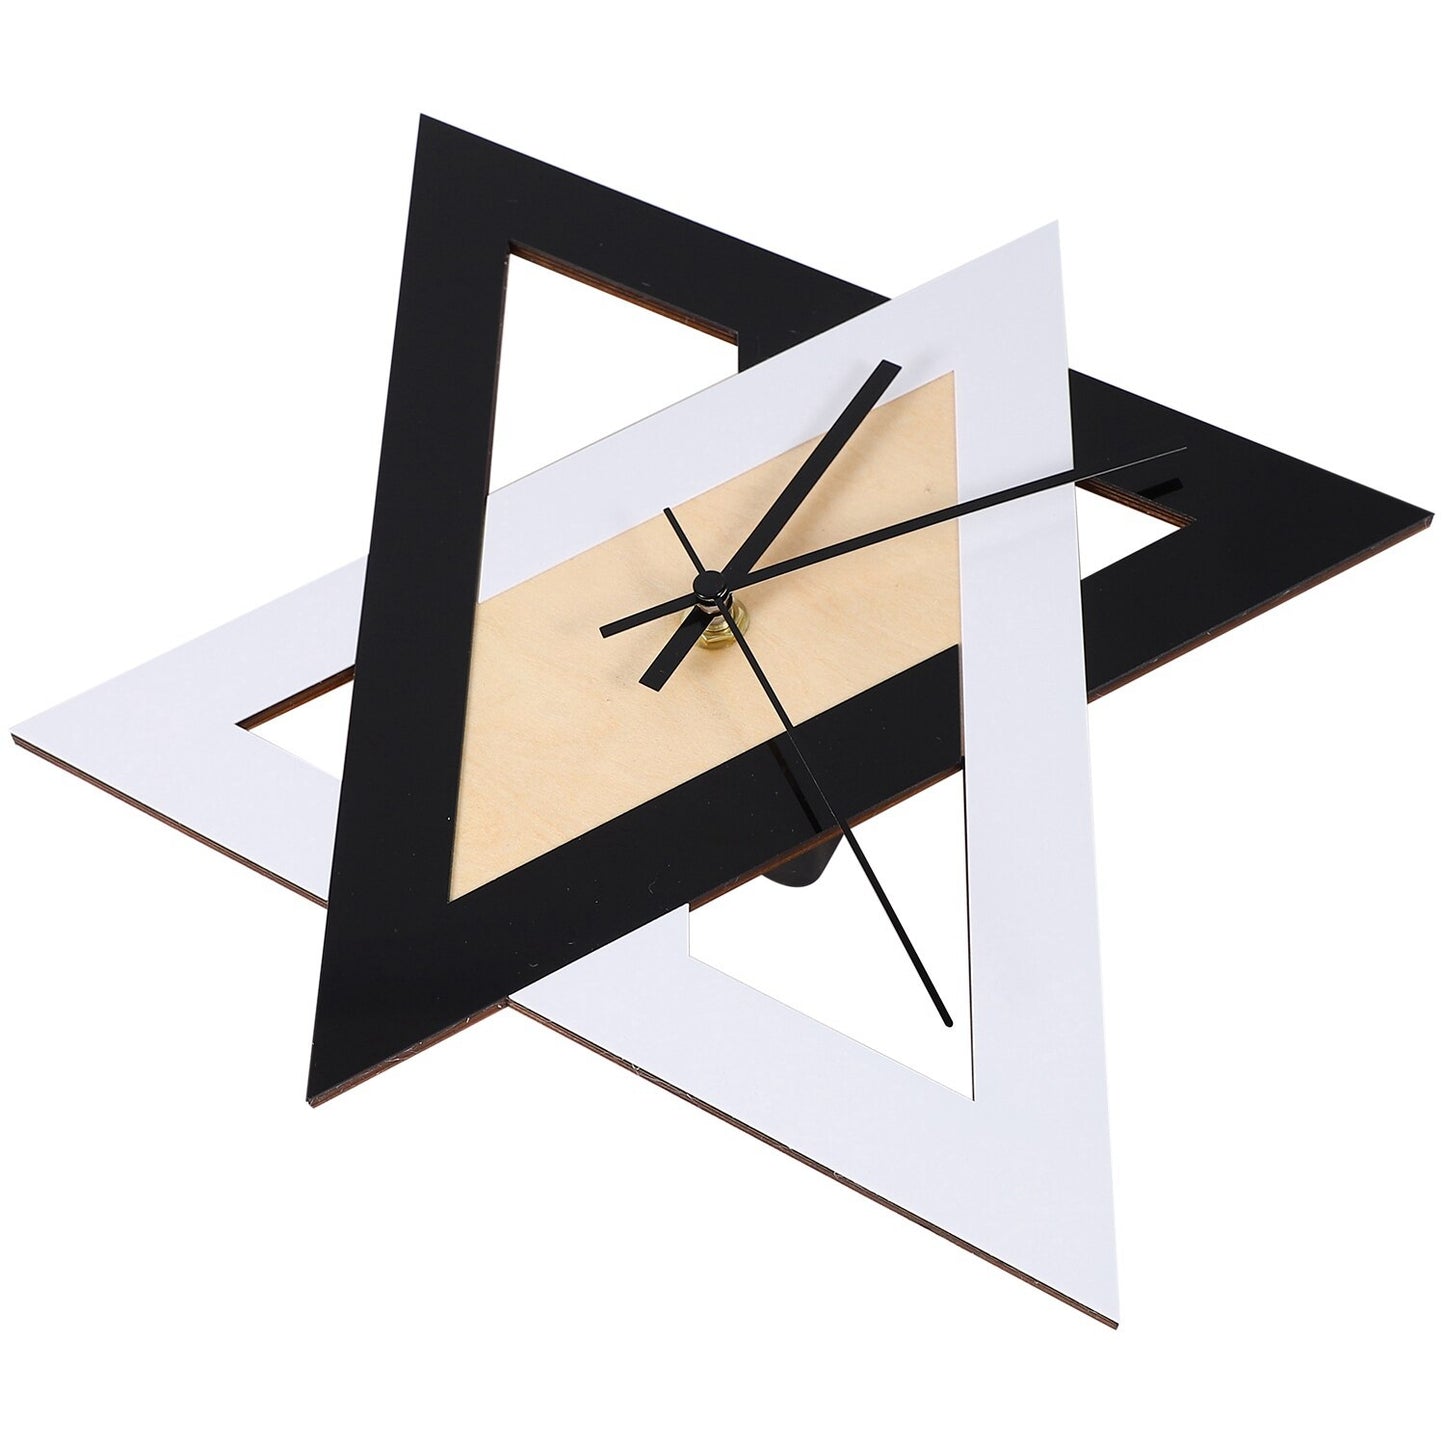 Horloge murale de style triangle géométrique minimaliste  Decor Harmony